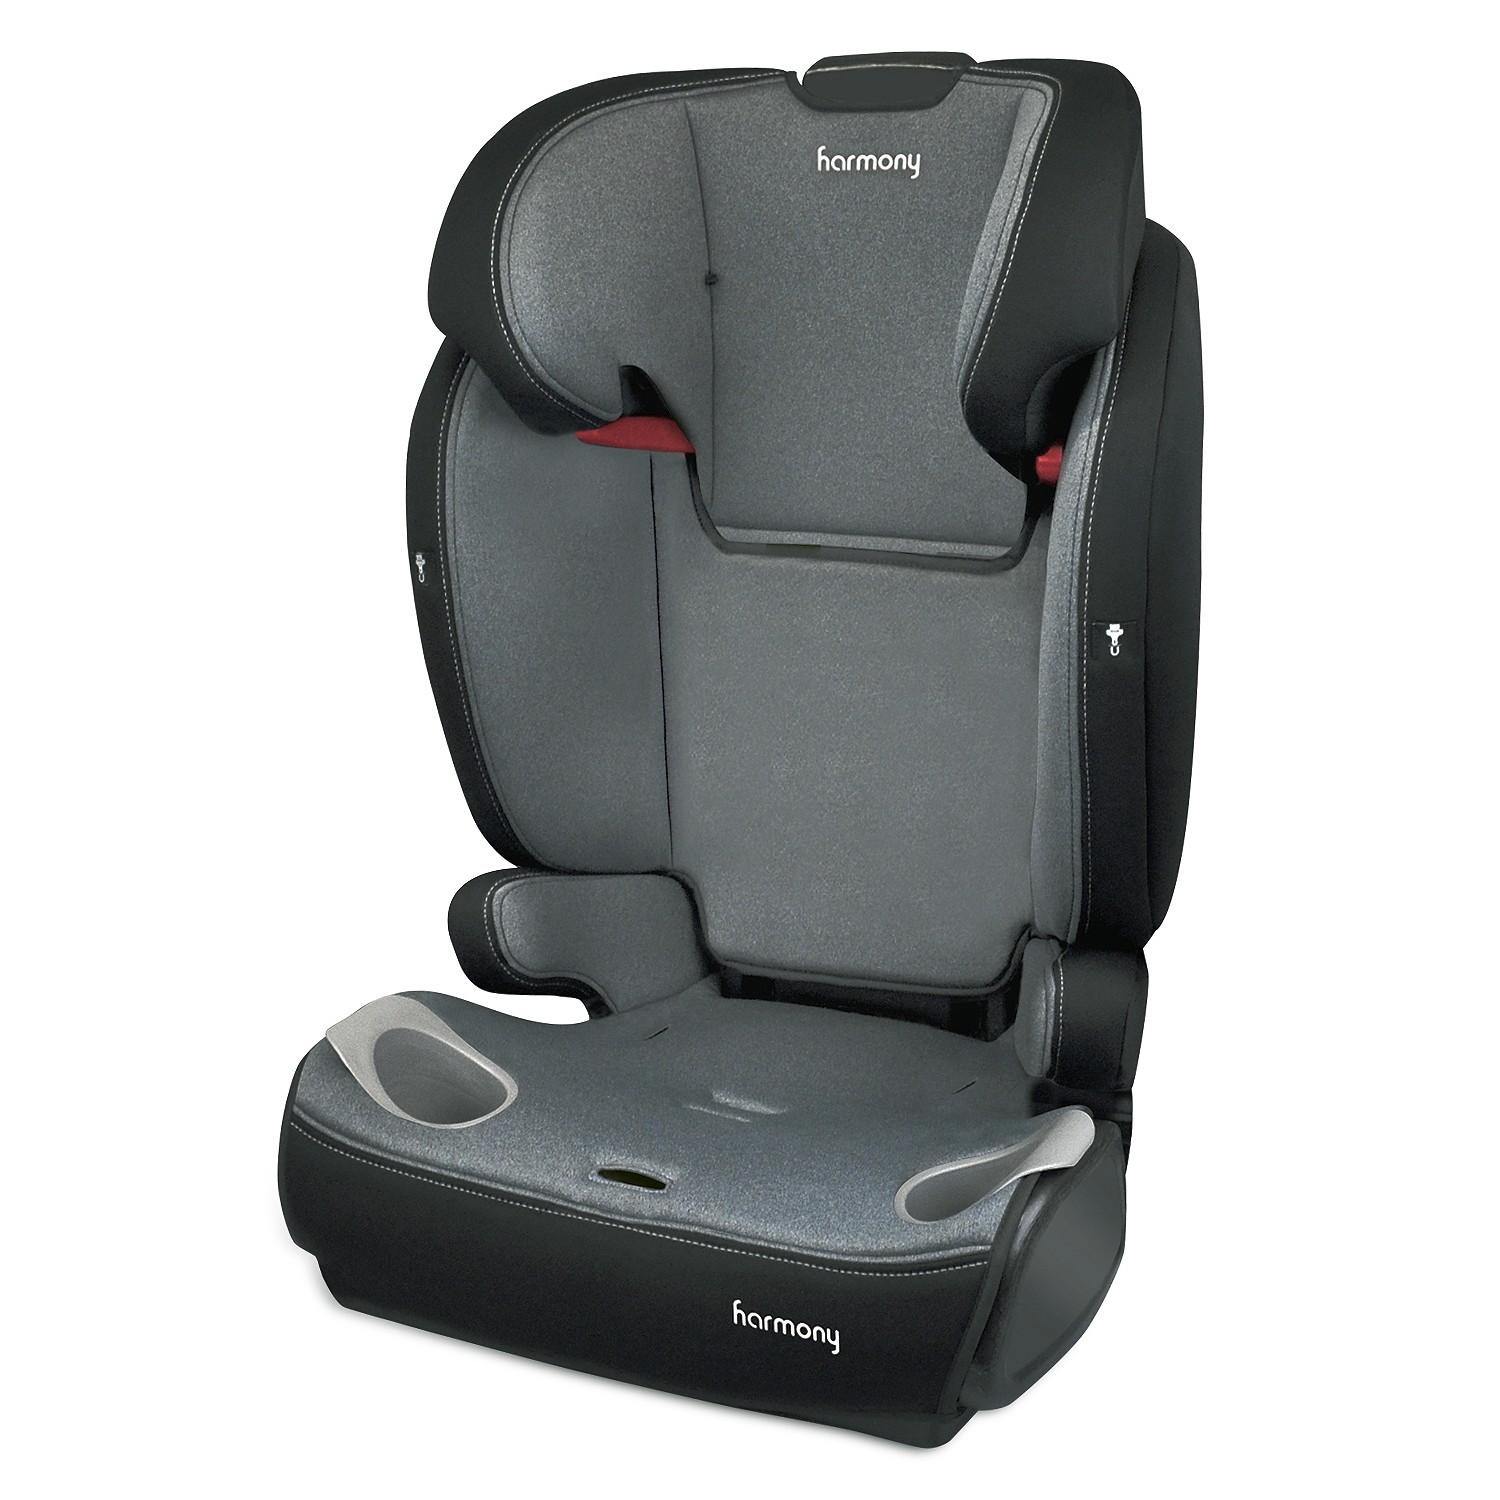 Commander Deluxe 3-in-1 Car Seat